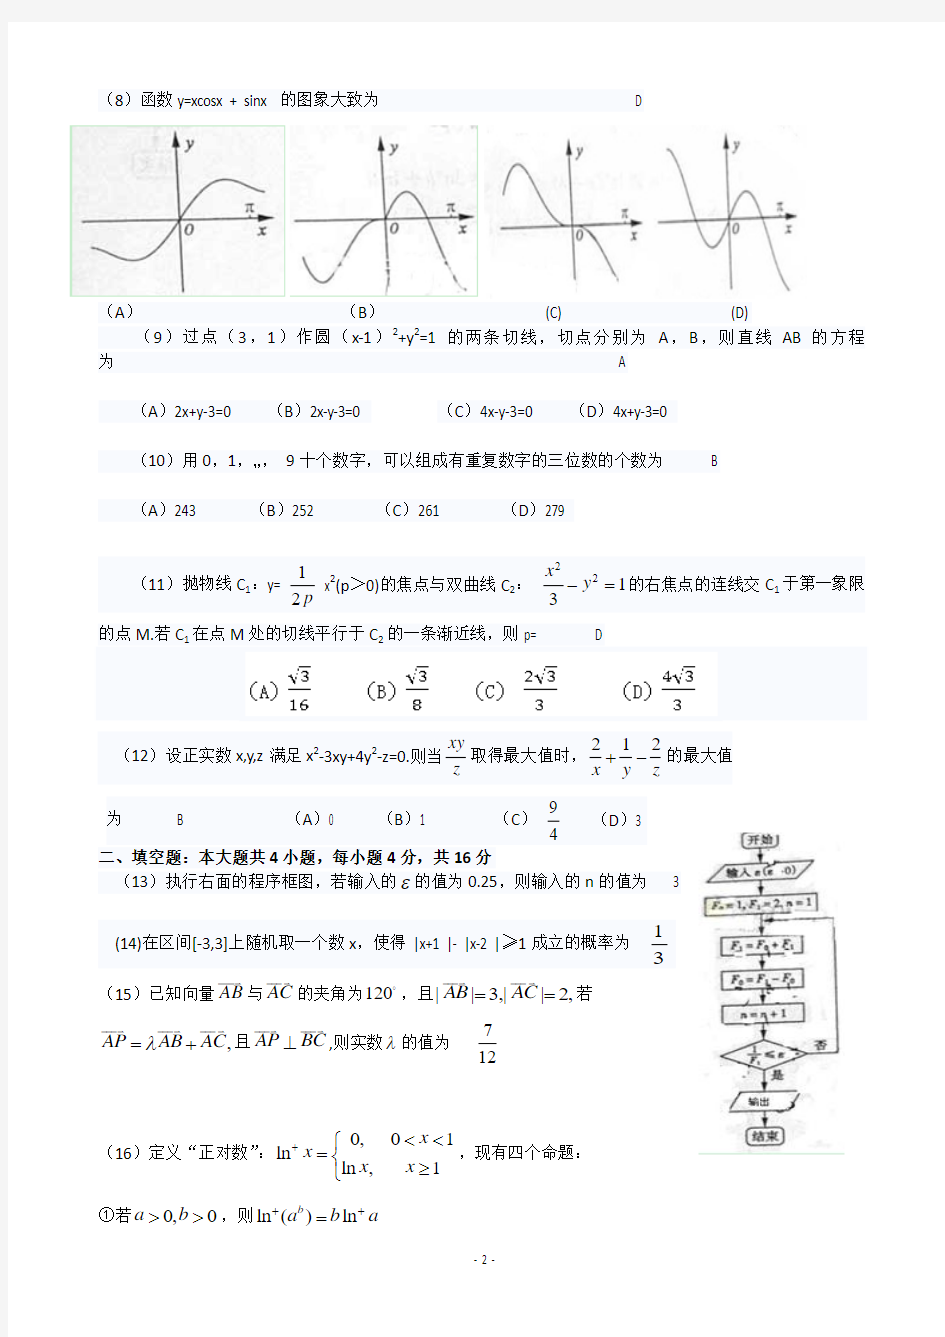 2013年山东高考数学试题(理科)精校word版,含选择填空答案